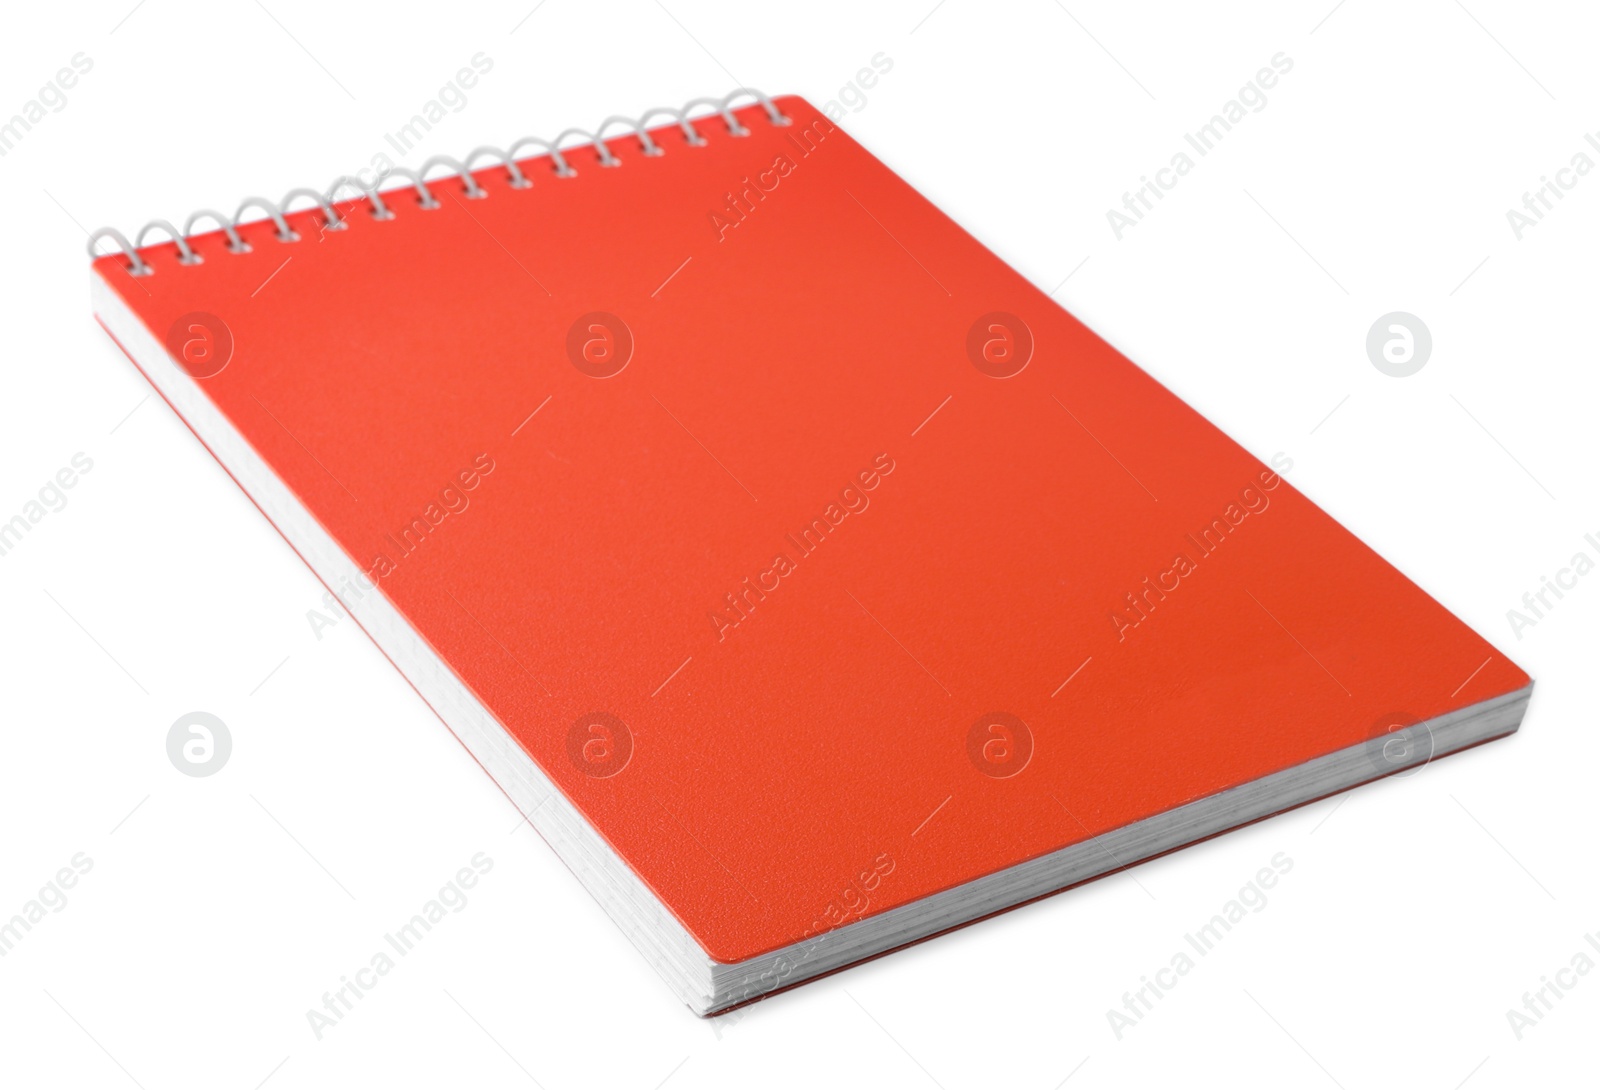 Photo of Stylish orange spiral notebook isolated on white